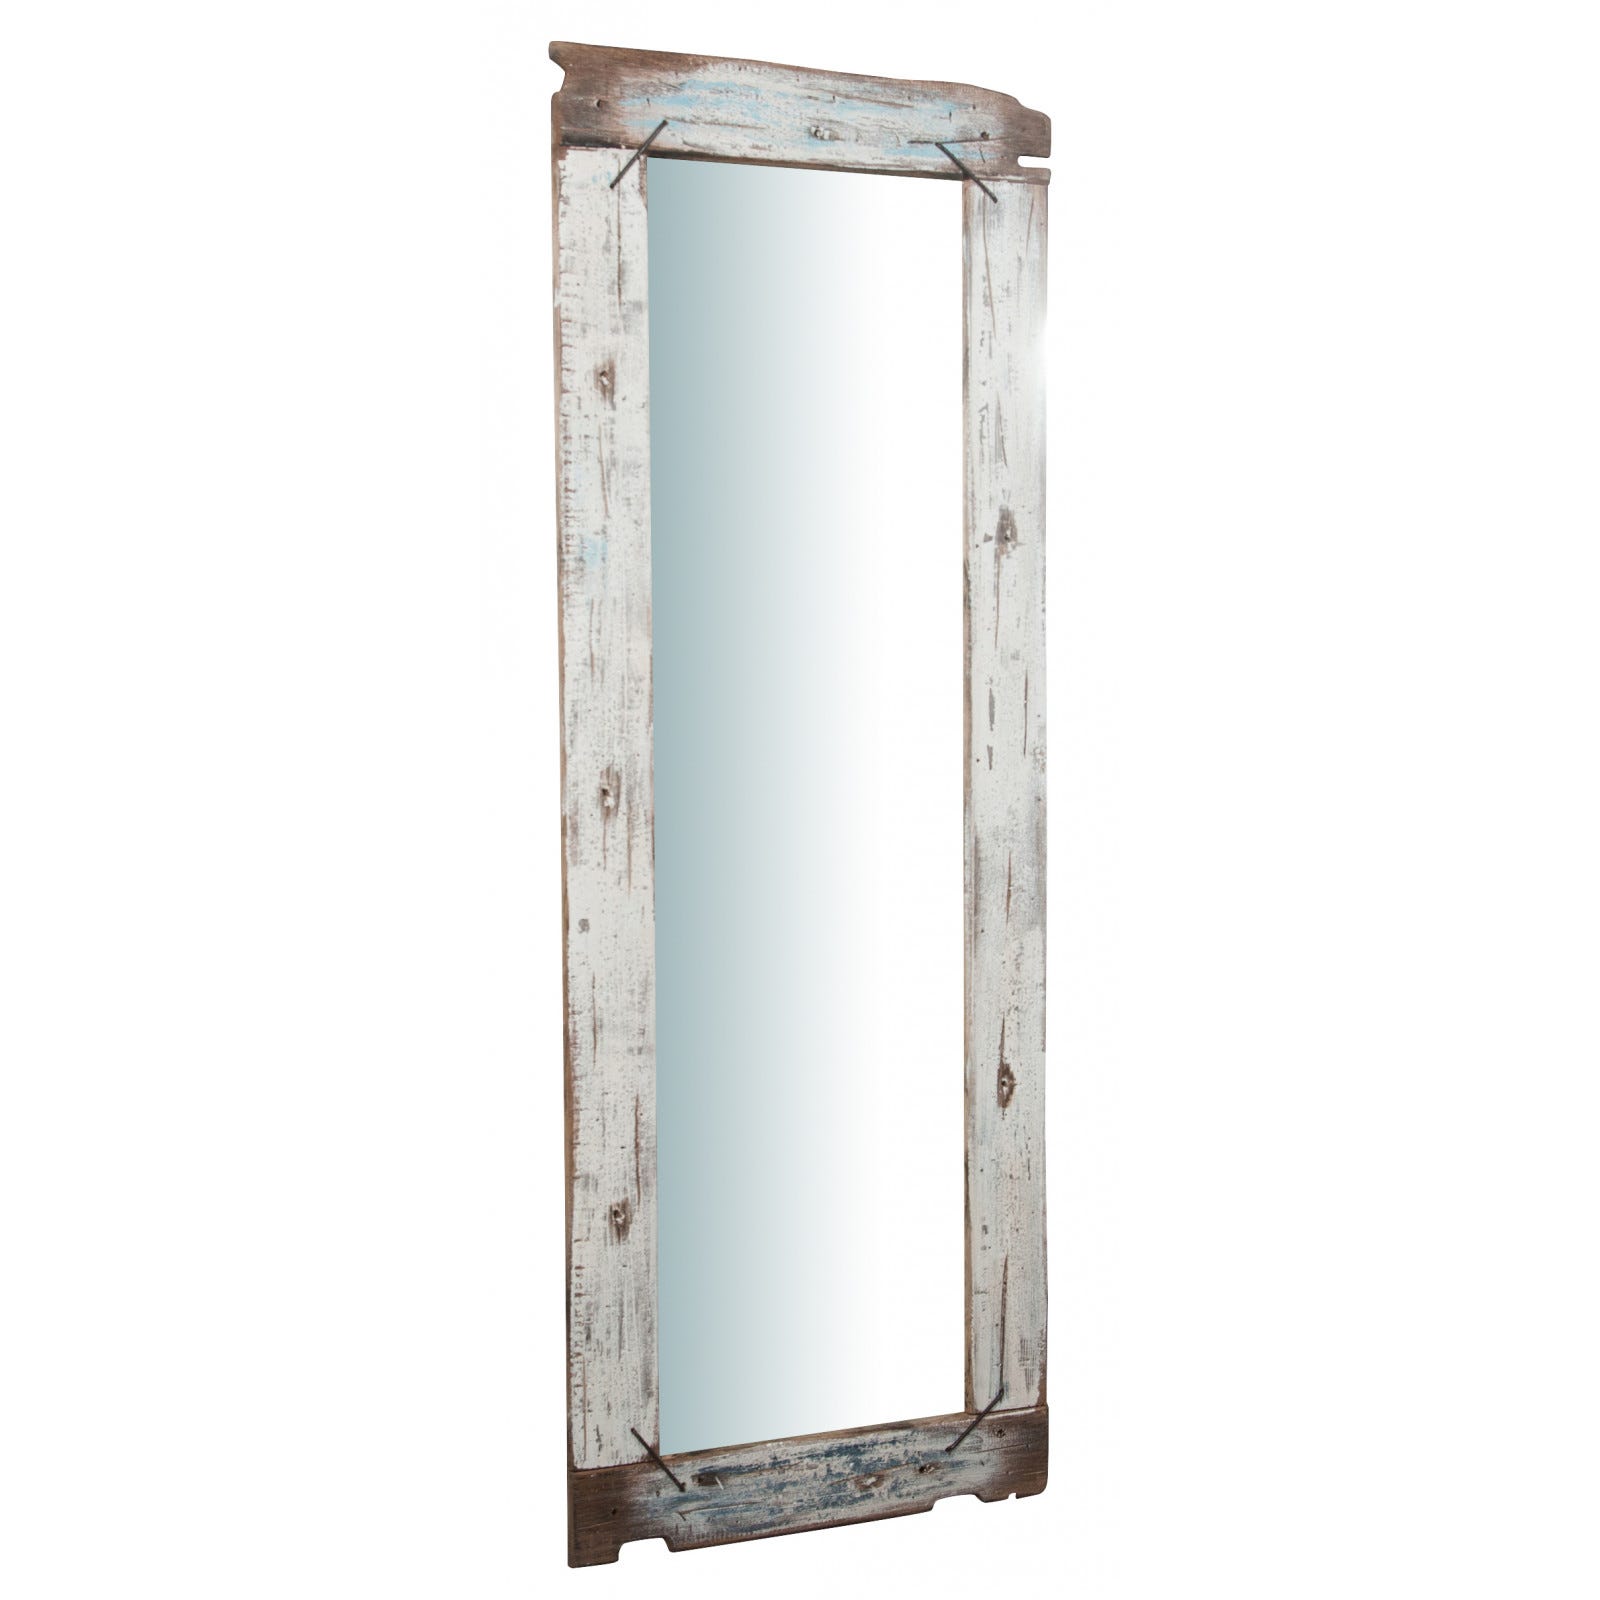 Specchio da parete lungo 180x66x4 cm, Specchio Shabby dipinto a mano, Adatto come specchiera bagno o specchio camera da letto